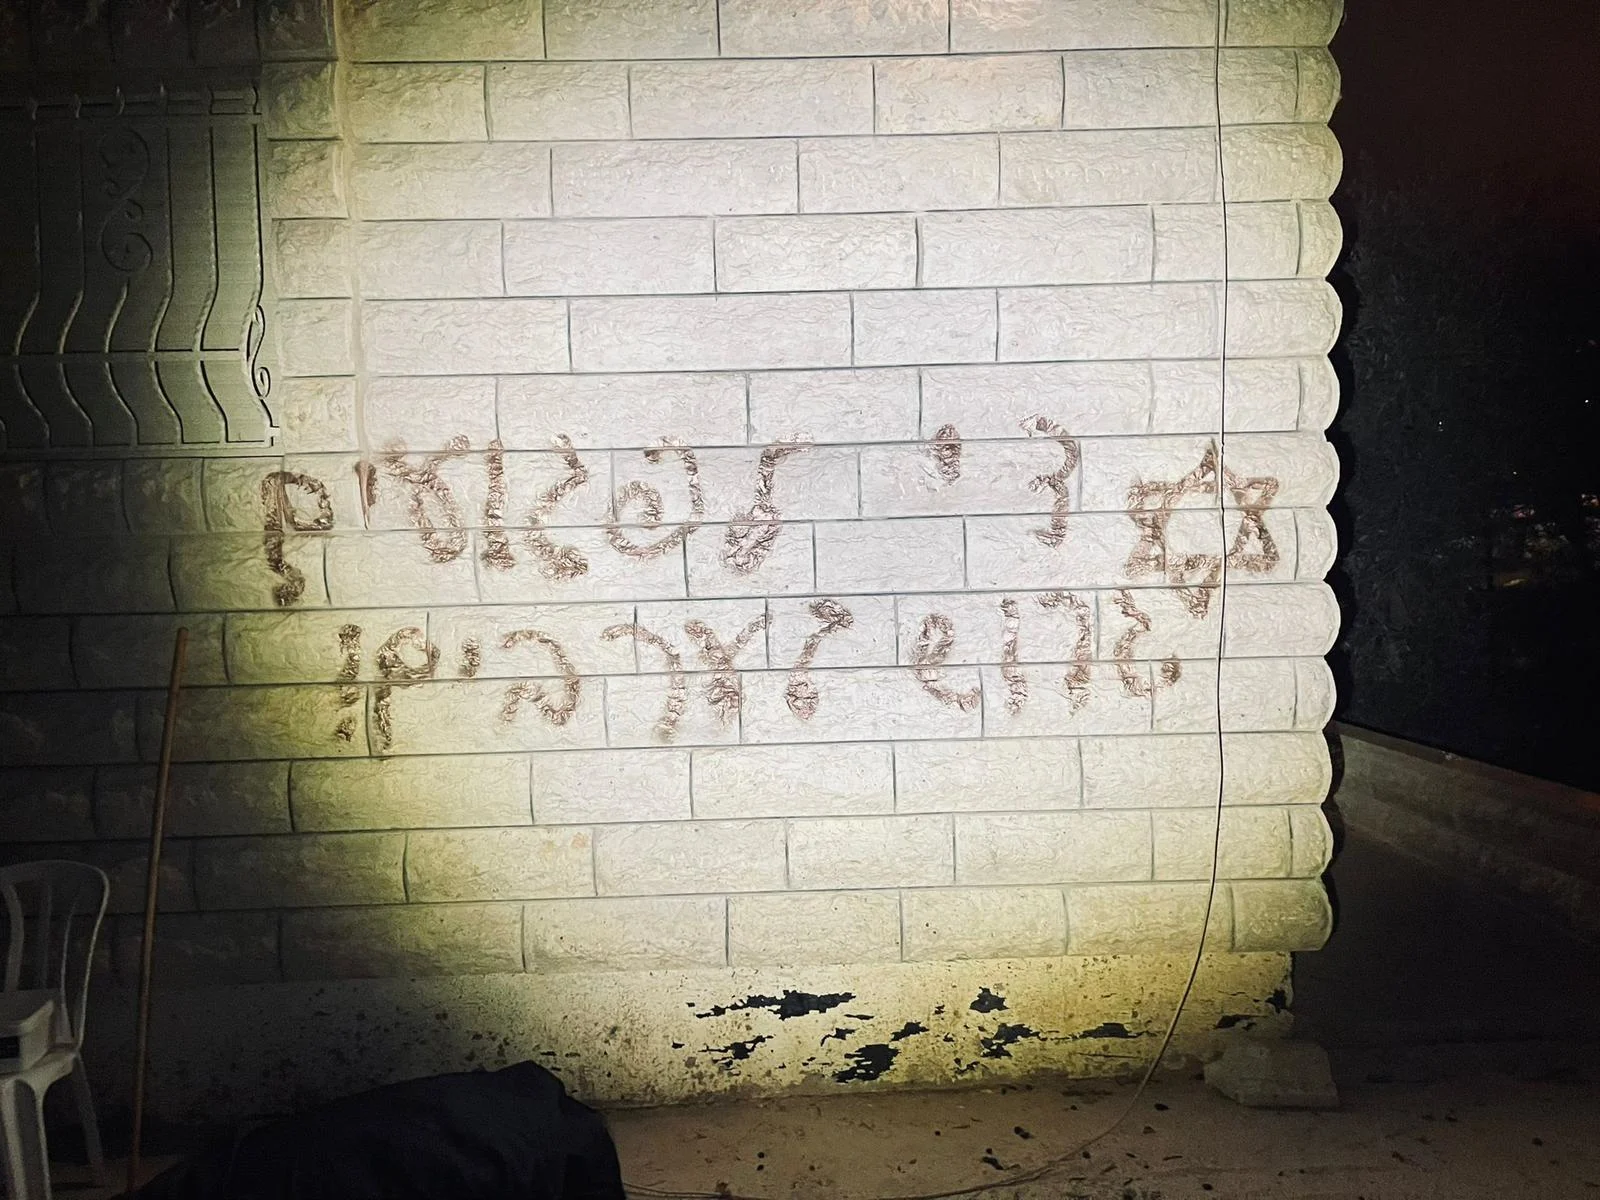 כתובת שרוססו על הקיר סמוך למקום ההצתה באבו גוש